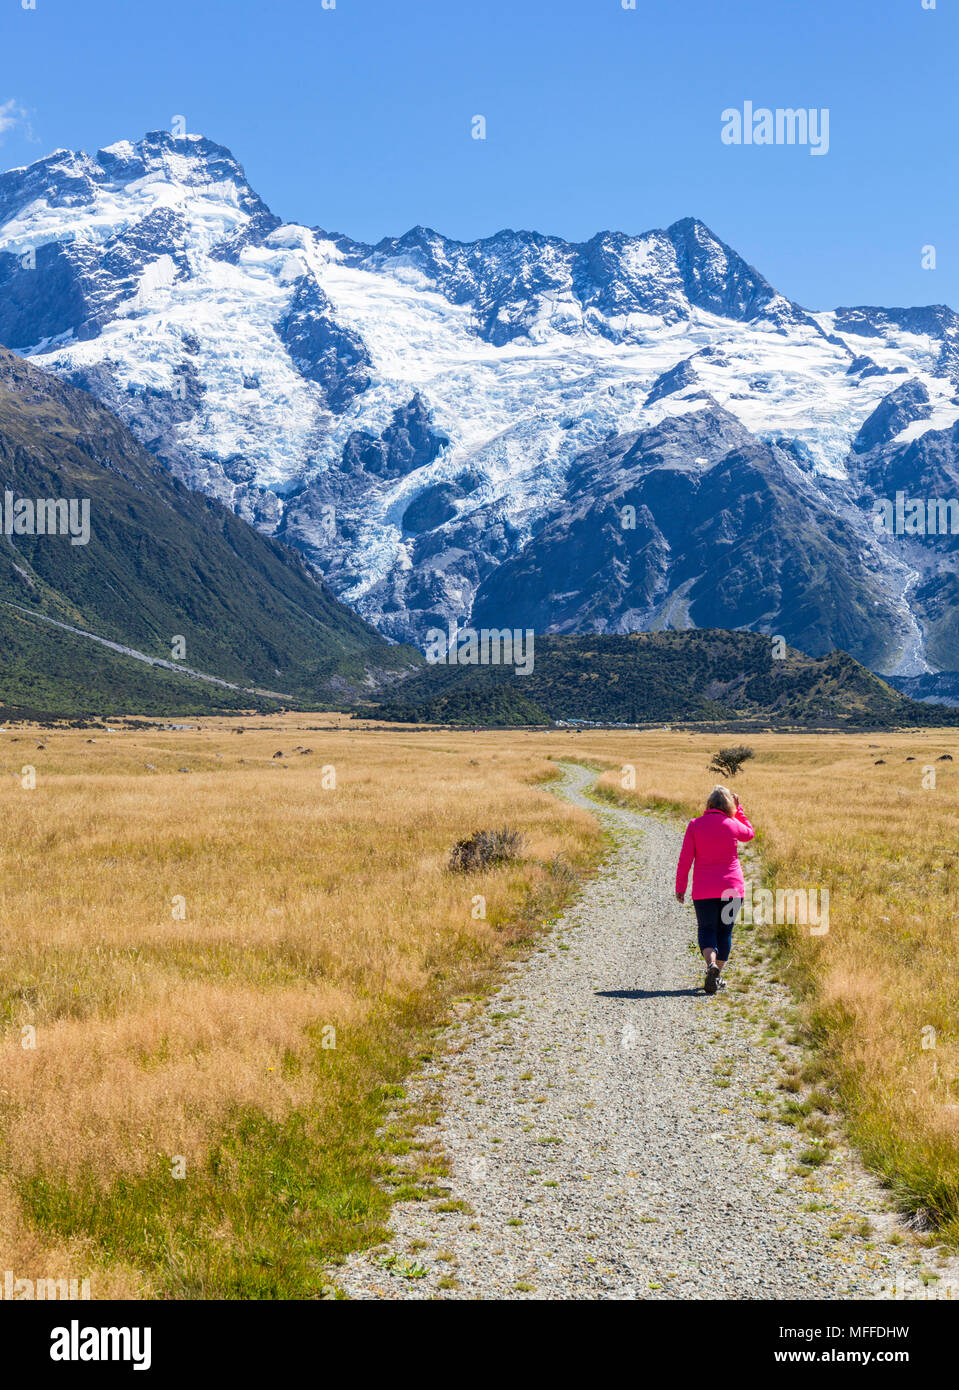 Nuova Zelanda Isola del Sud della Nuova Zelanda donna turista (modello rilasciato) passeggiate sul lungomare nel parco nazionale di Mount Cook Isola del Sud della Nuova Zelanda Foto Stock